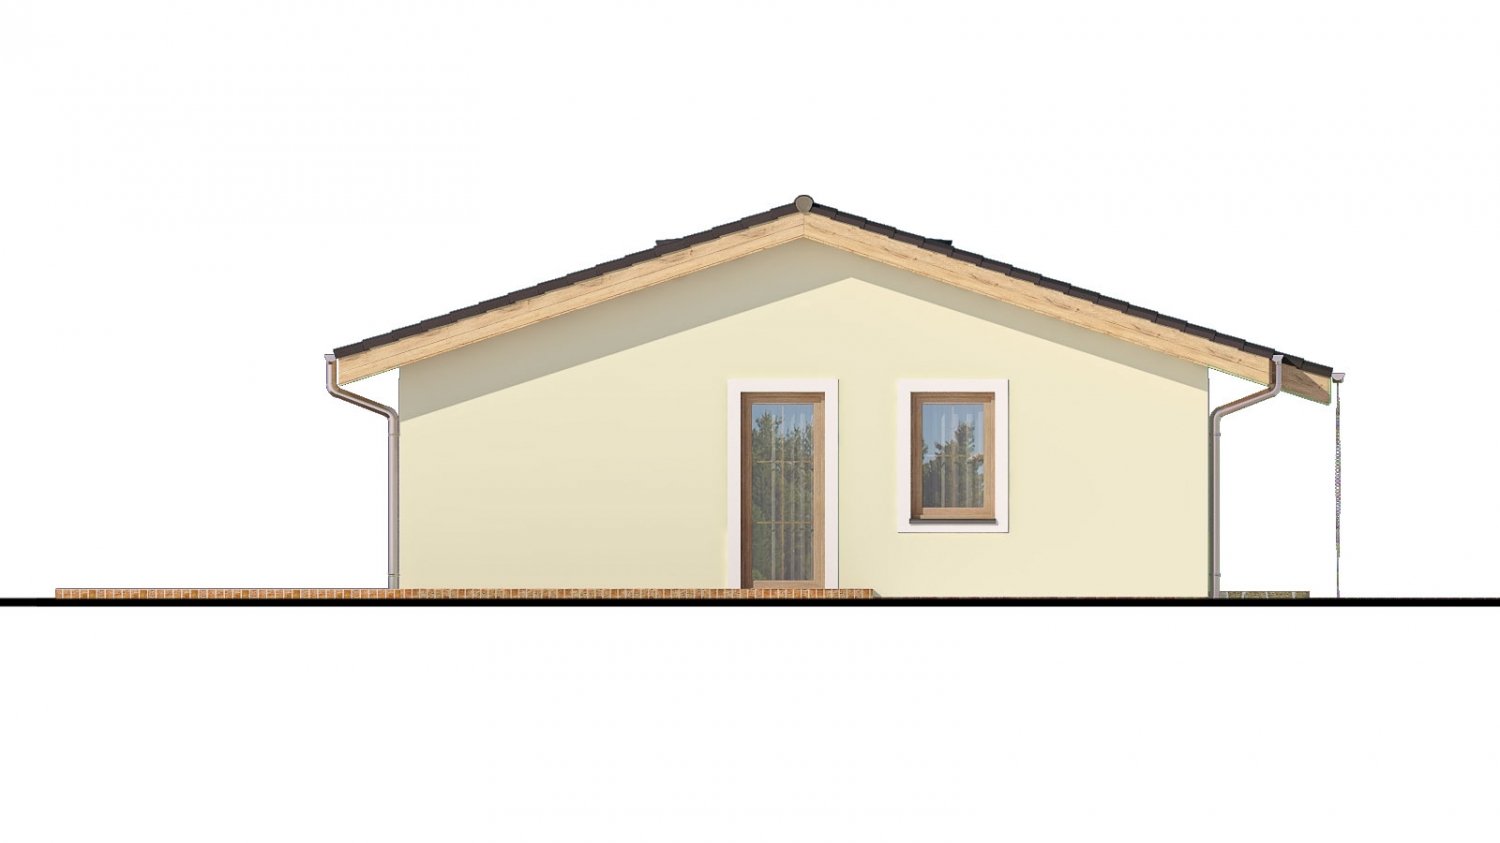 projekt rodinného domu na úzky pozemok so sedlovou strechou